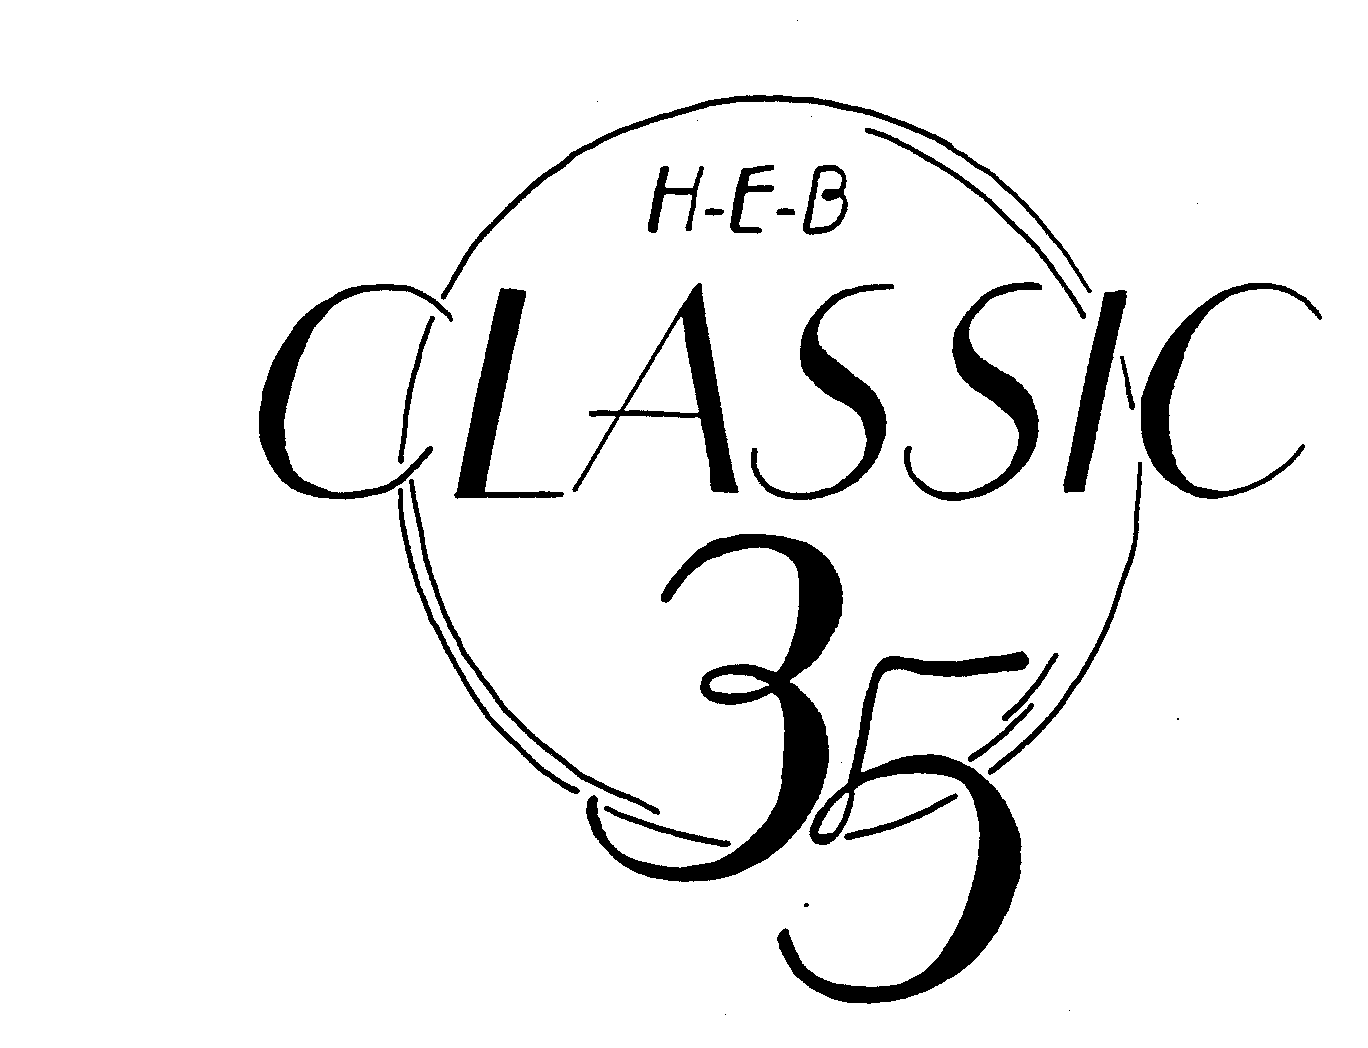  H-E-B CLASSIC 35